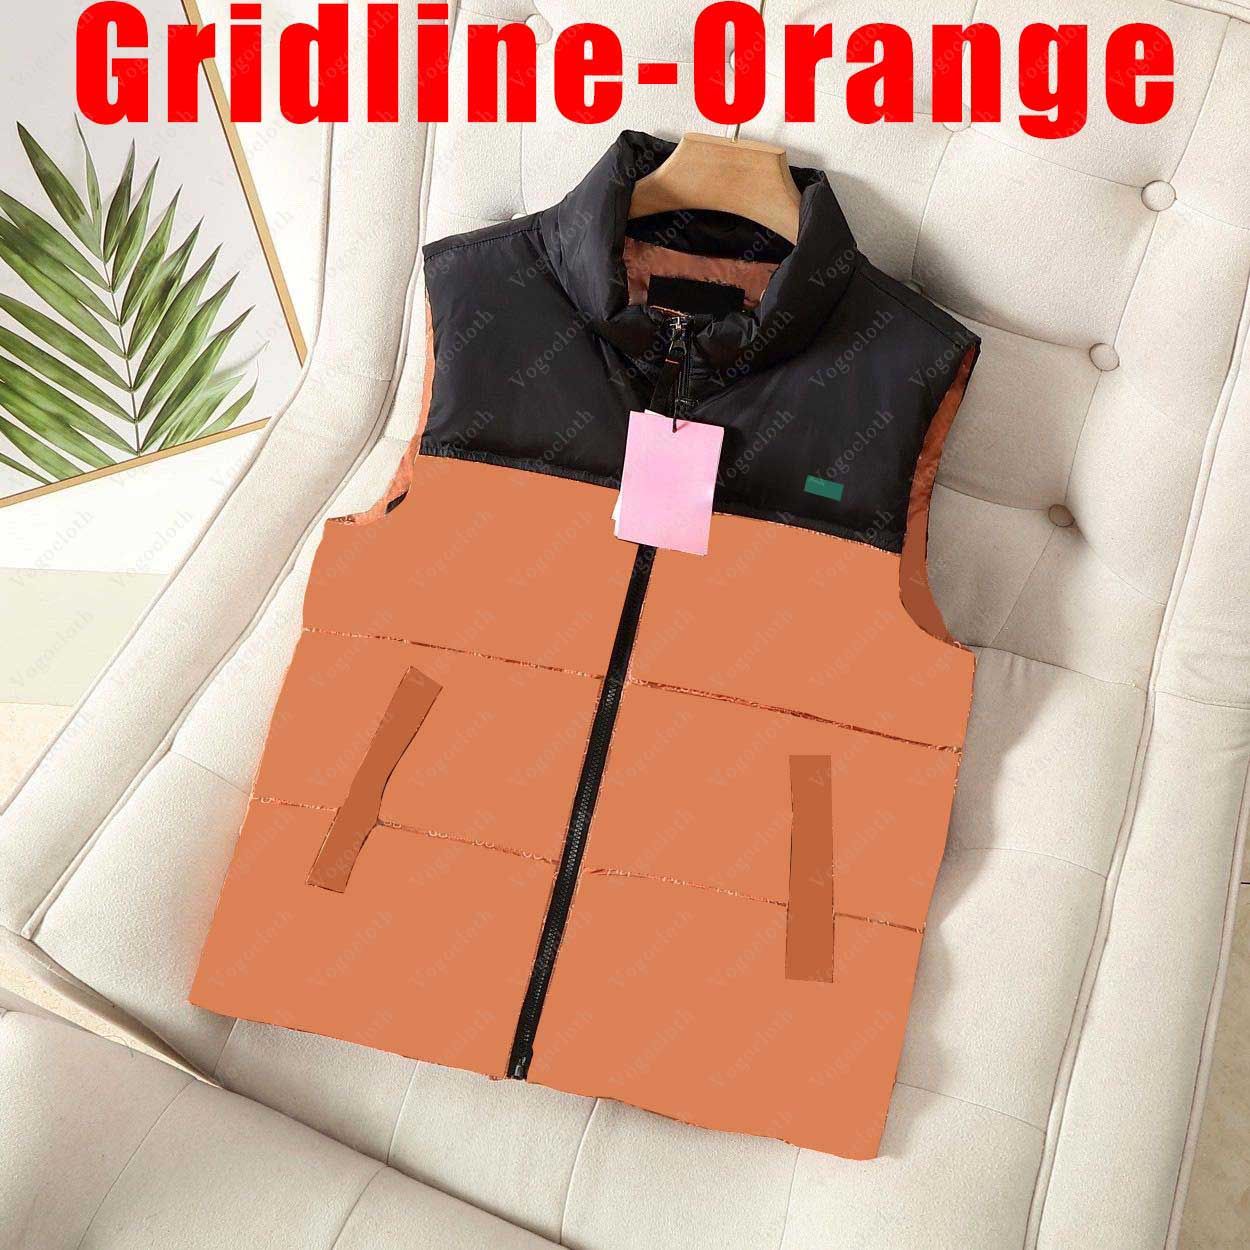 Gridline-pomarańczowy